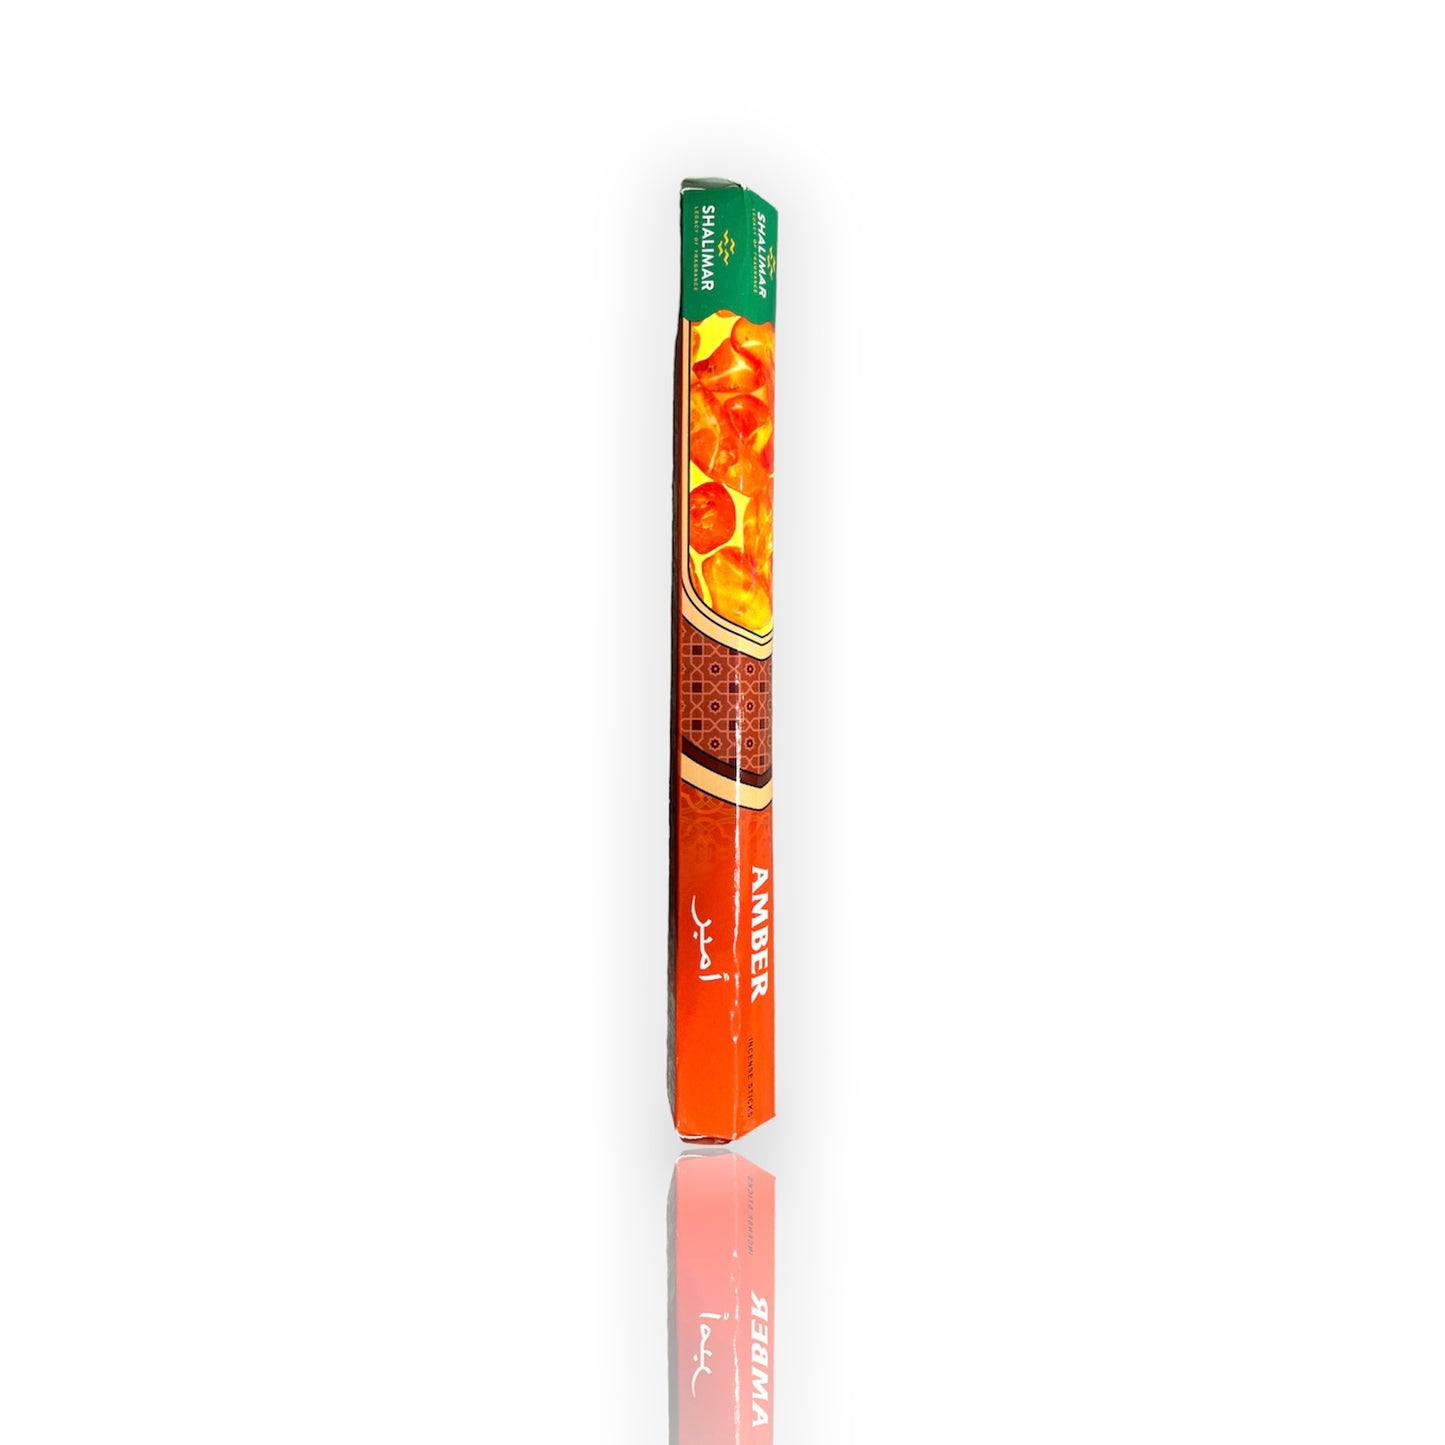 Shalimar Incense Sticks: Amber